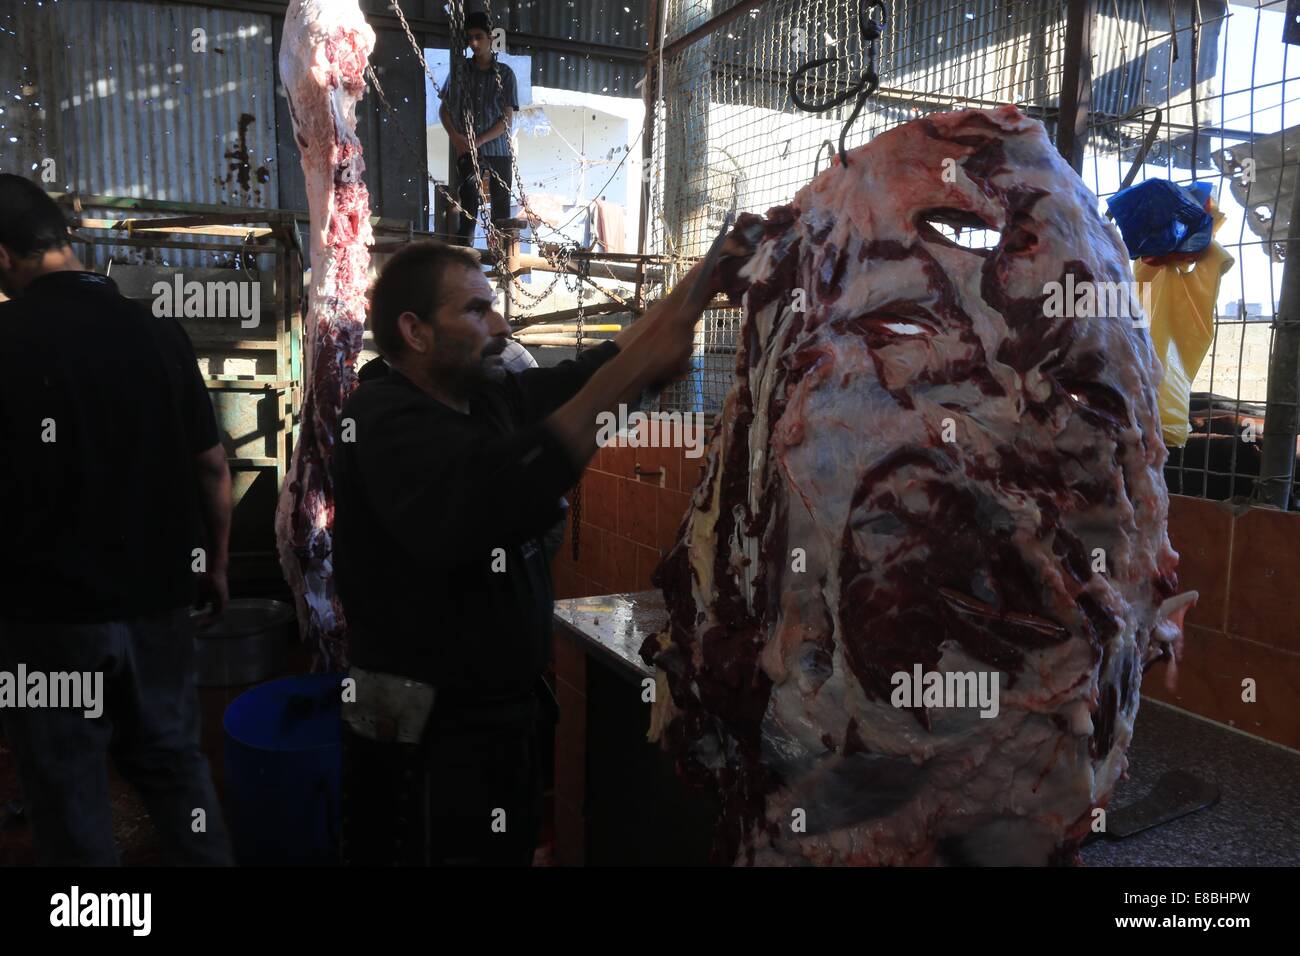 Gaza-Stadt, Gazastreifen, Palästinensische Gebiete. 4. Oktober 2014. Ein palästinensische Metzger schneidet das Fleisch einer Kuh nach der Schlachtung der am ersten Tag des Eid al-Adha oder oder das Fest der Opfer in Gaza-Stadt am 4. Oktober 2014. Muslime auf der ganzen Welt feiern Eid al-Adha, das Festival von Opfern, um das Ende der Pilgerfahrt durch Schlachtung Schafe, Ziegen, Kühe und Kamele um Propheten Abrahams Bereitschaft, seinen Sohn Ismail auf Gottes Befehl Credit Opfern zu gedenken: Mohammed Asad/APA Bilder/ZUMA Draht/Alamy Live News Stockfoto